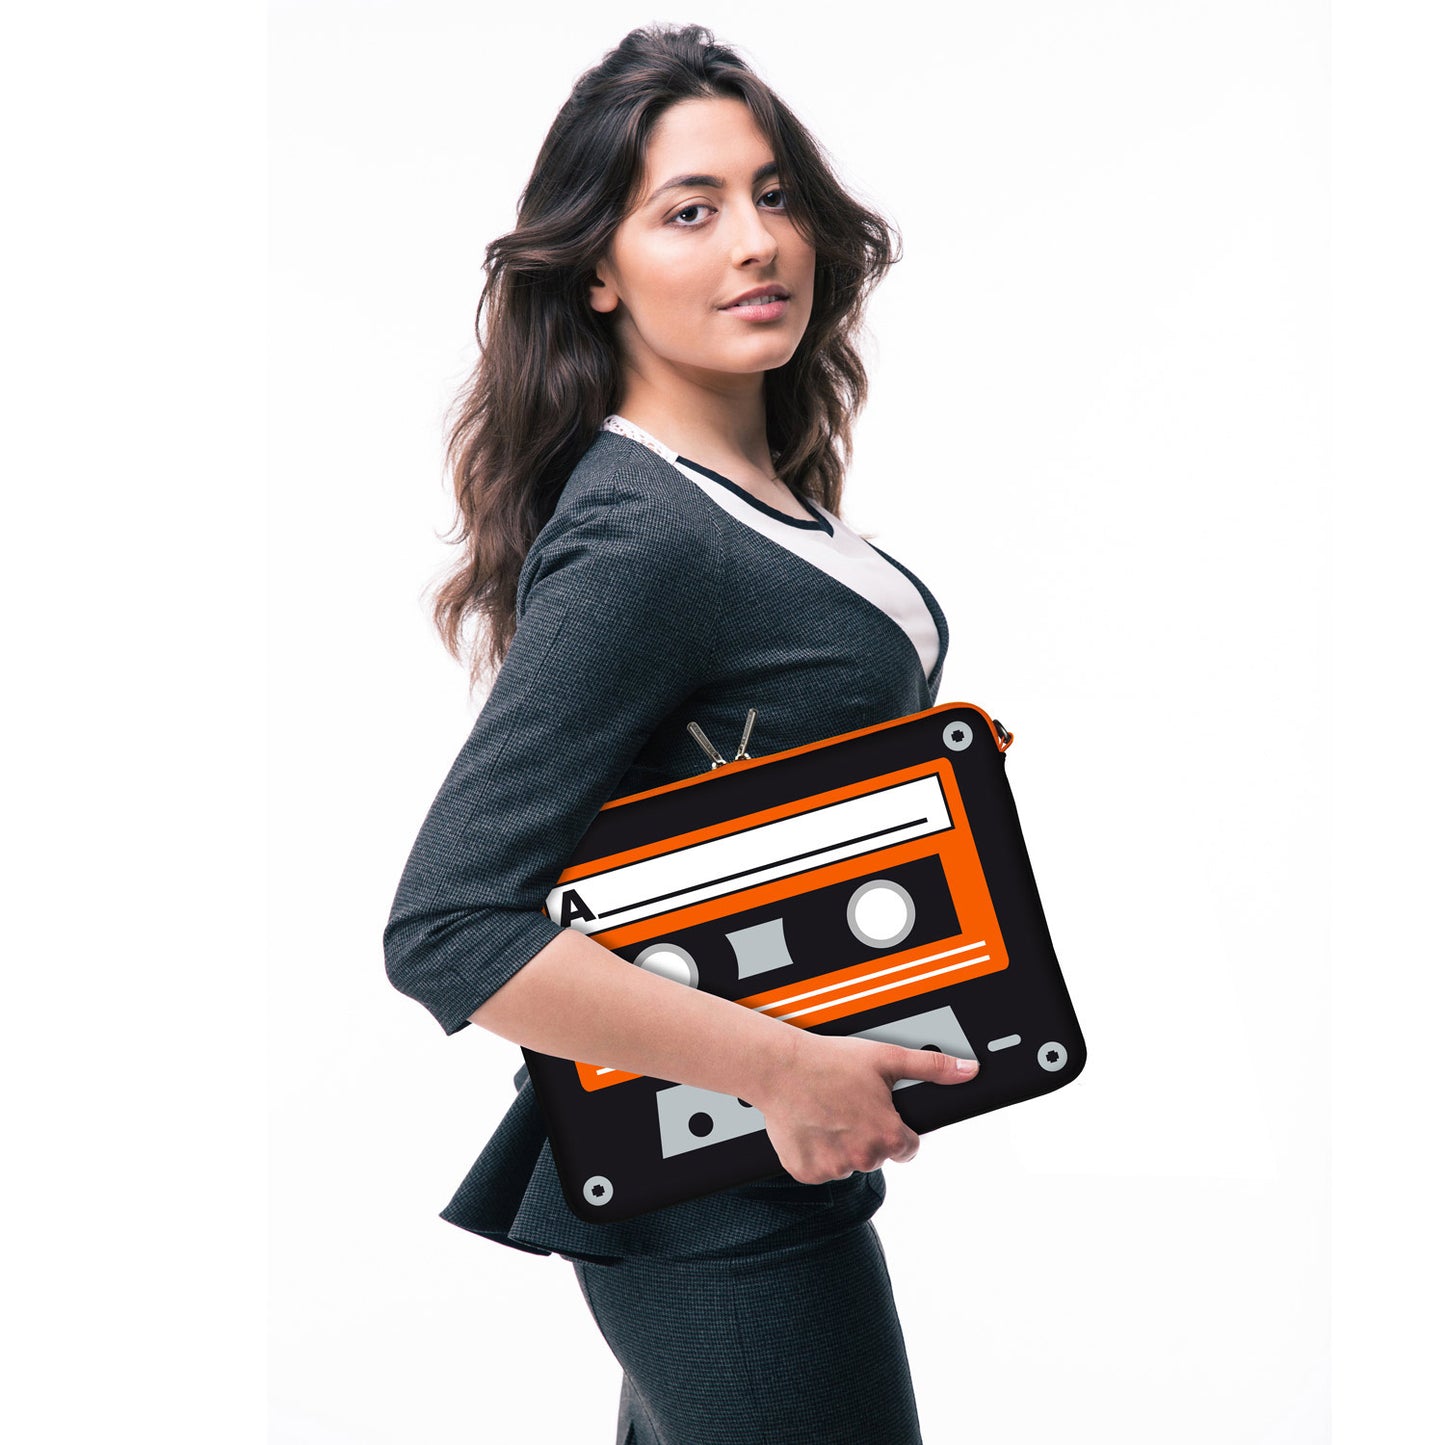 LS132 Old School Designer Laptop Tasche in schwarz-orange mit Ösen zum Anhängen von Accessoires